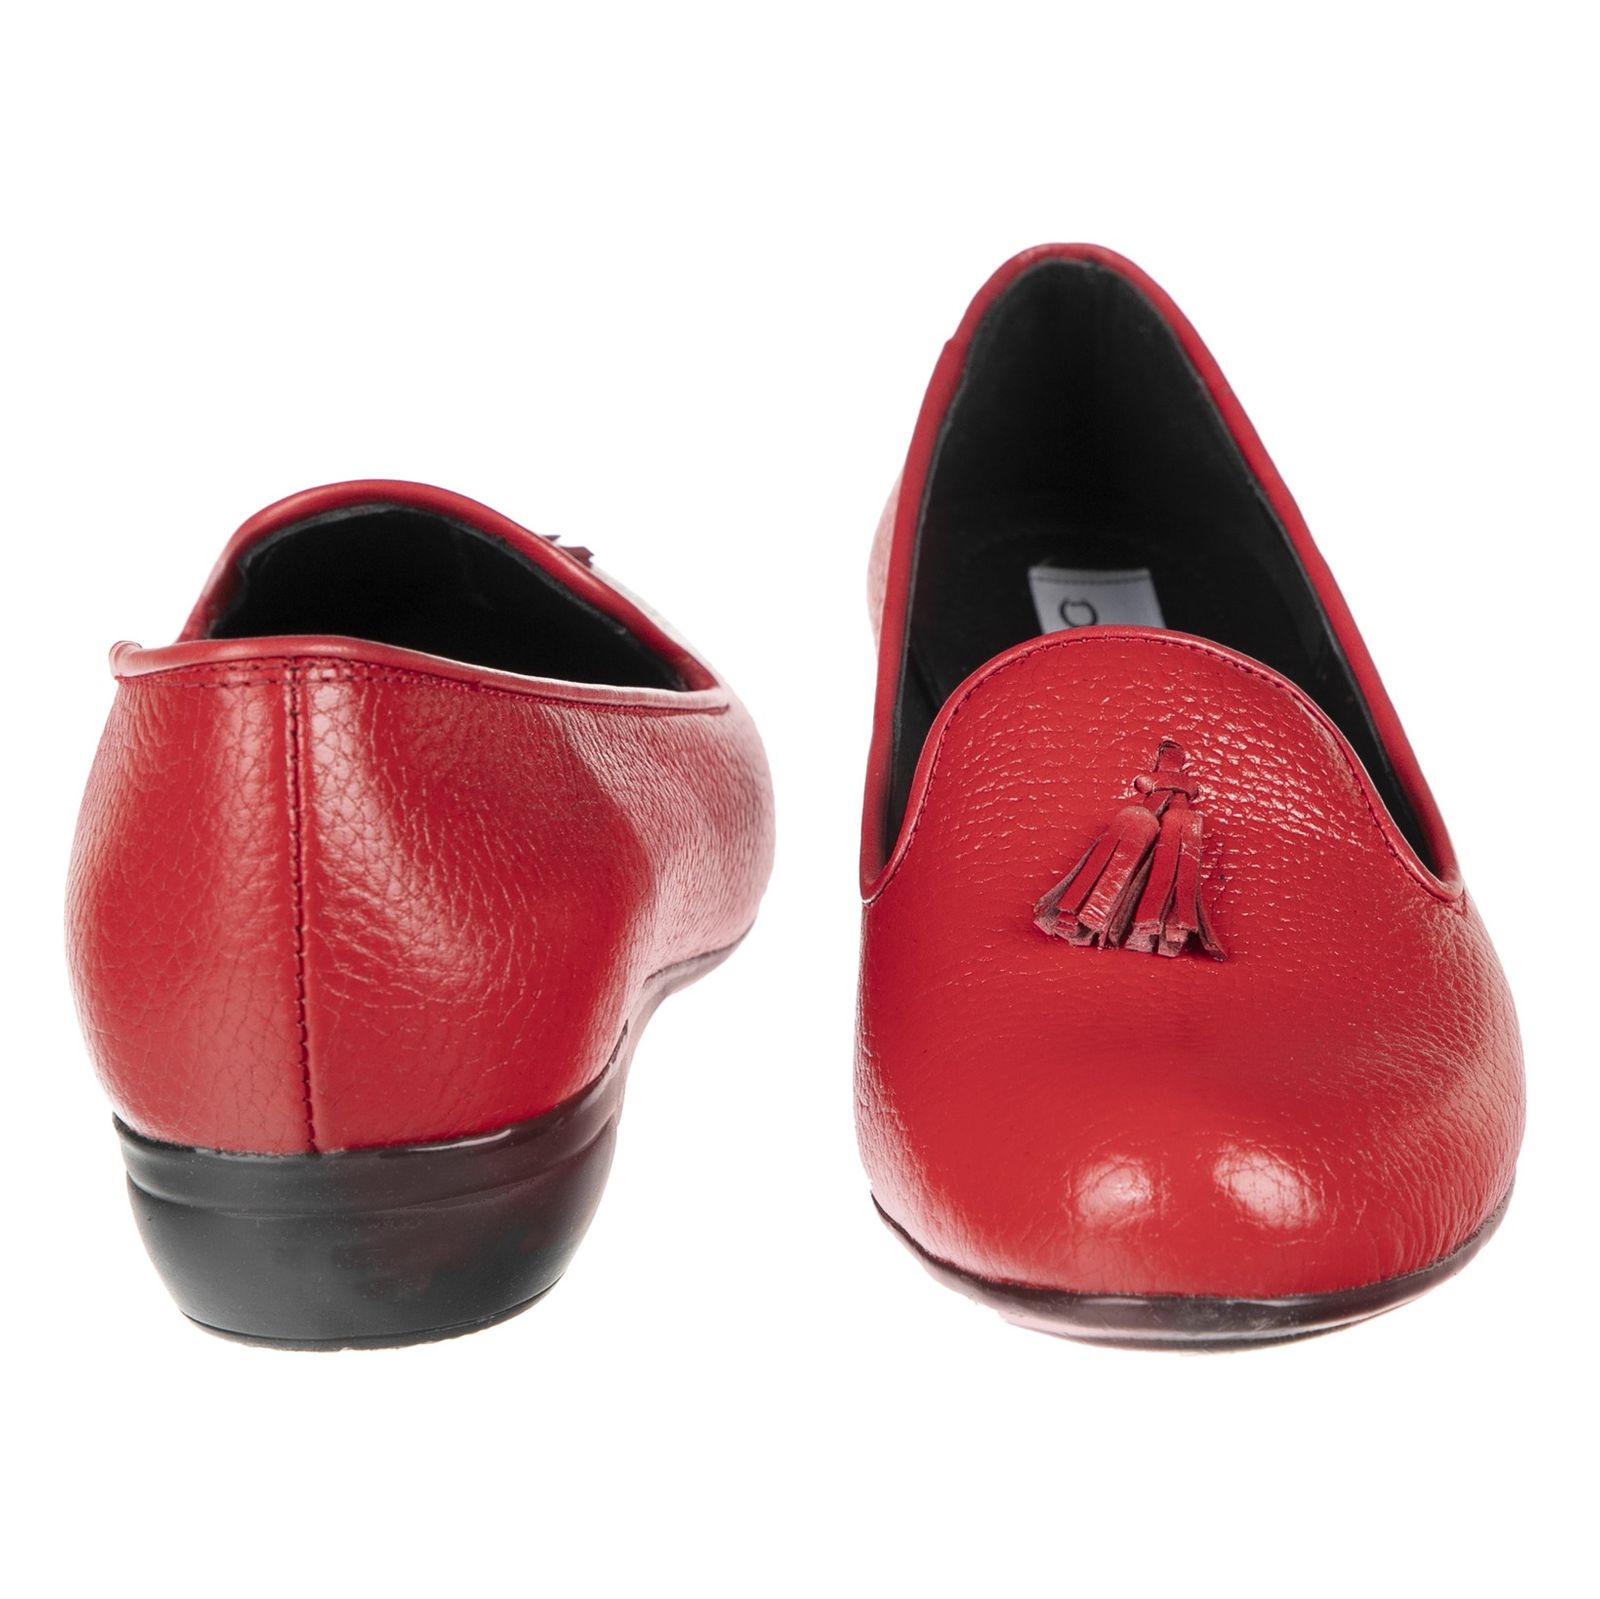 کفش زنانه دلفارد مدل 5183A500-102 - قرمز - 5